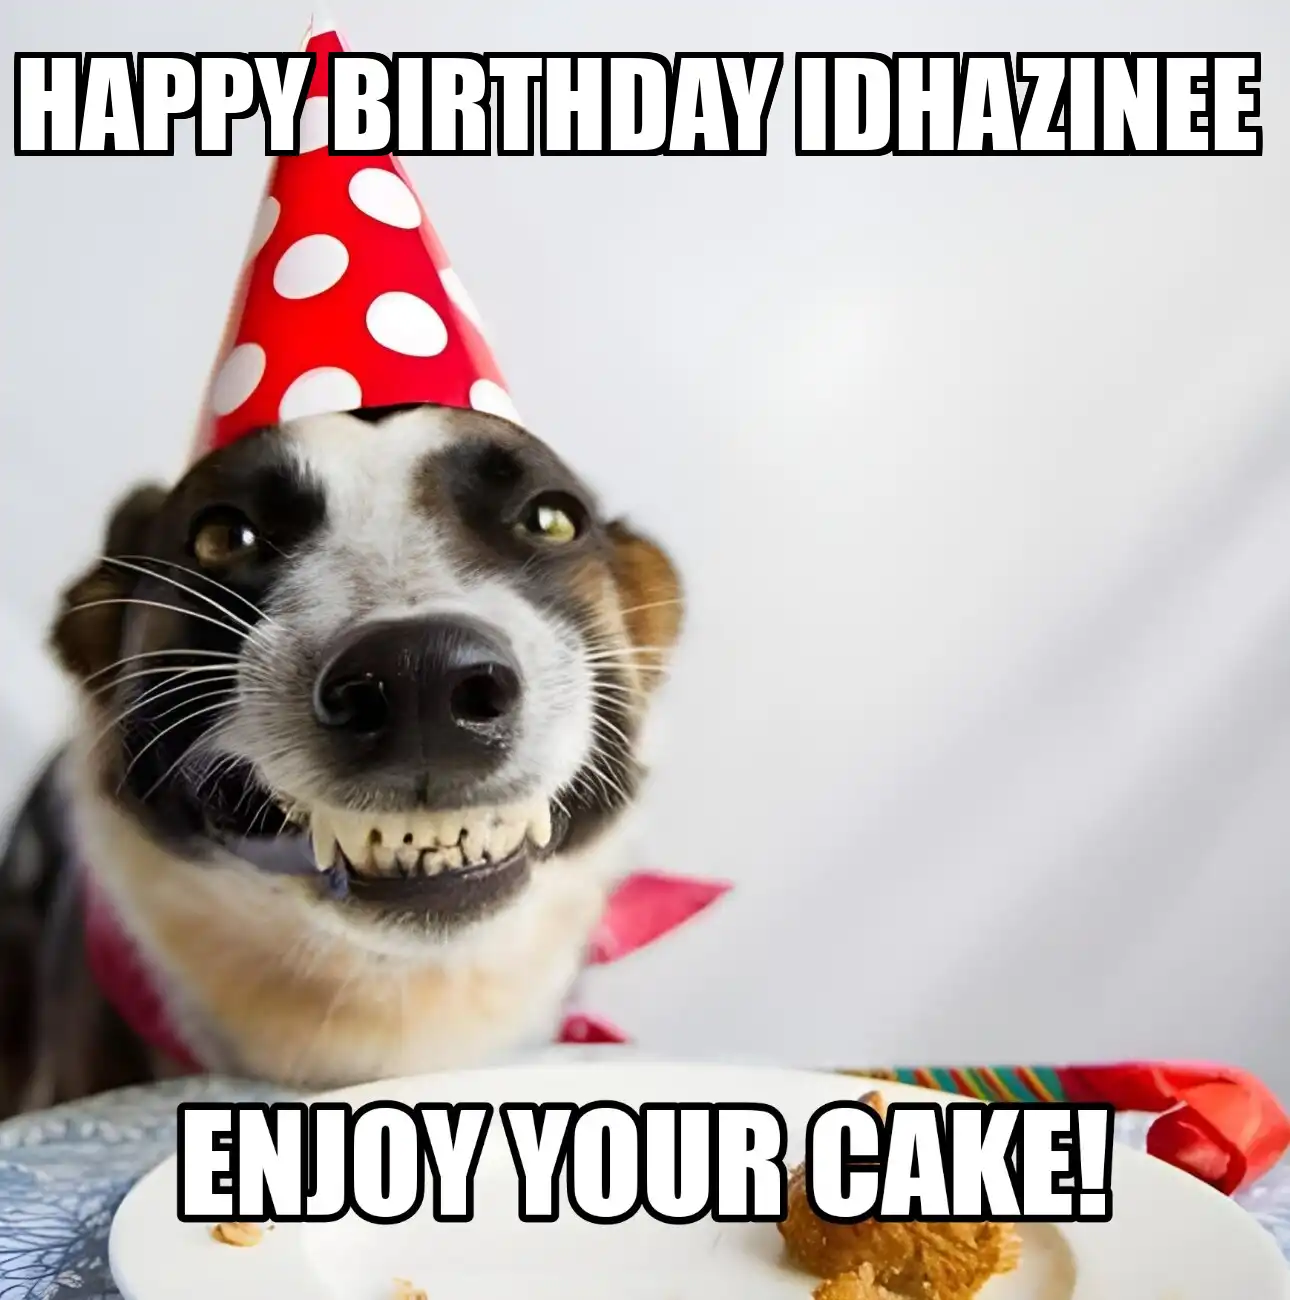 Happy Birthday Idhazinee Enjoy Your Cake Dog Meme